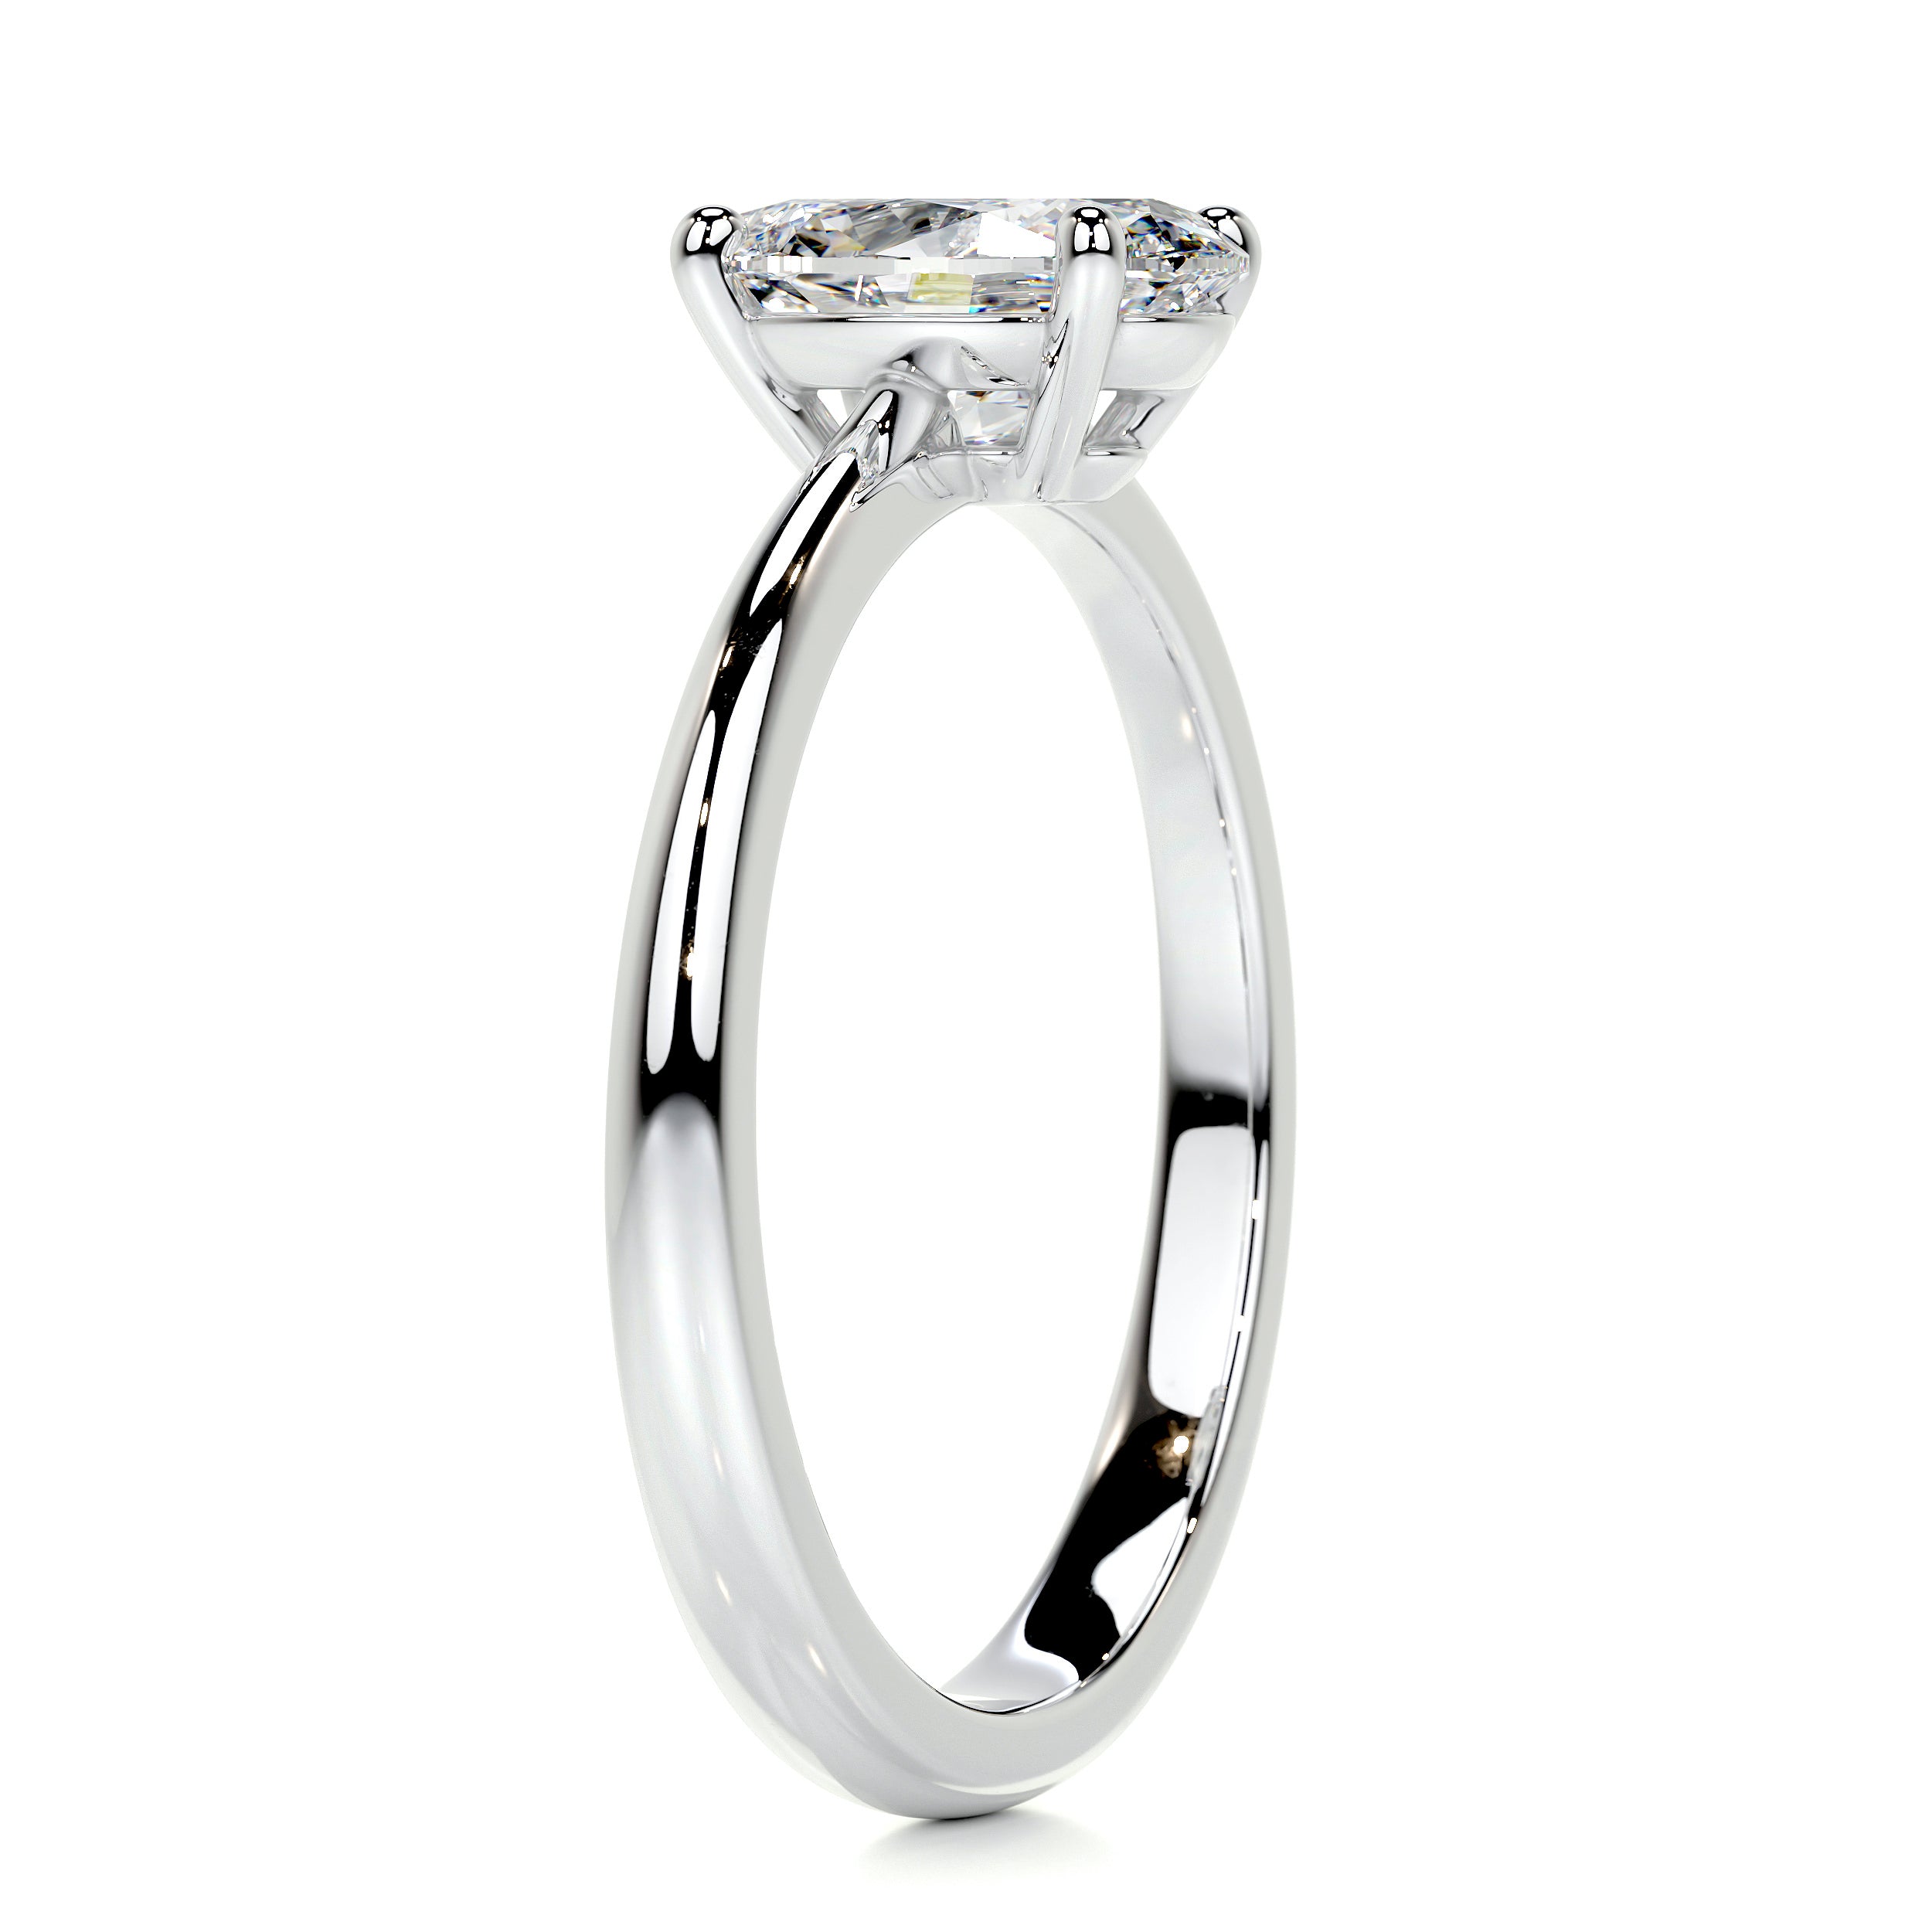 Julia Diamond Engagement Ring   (1 Carat) -Platinum